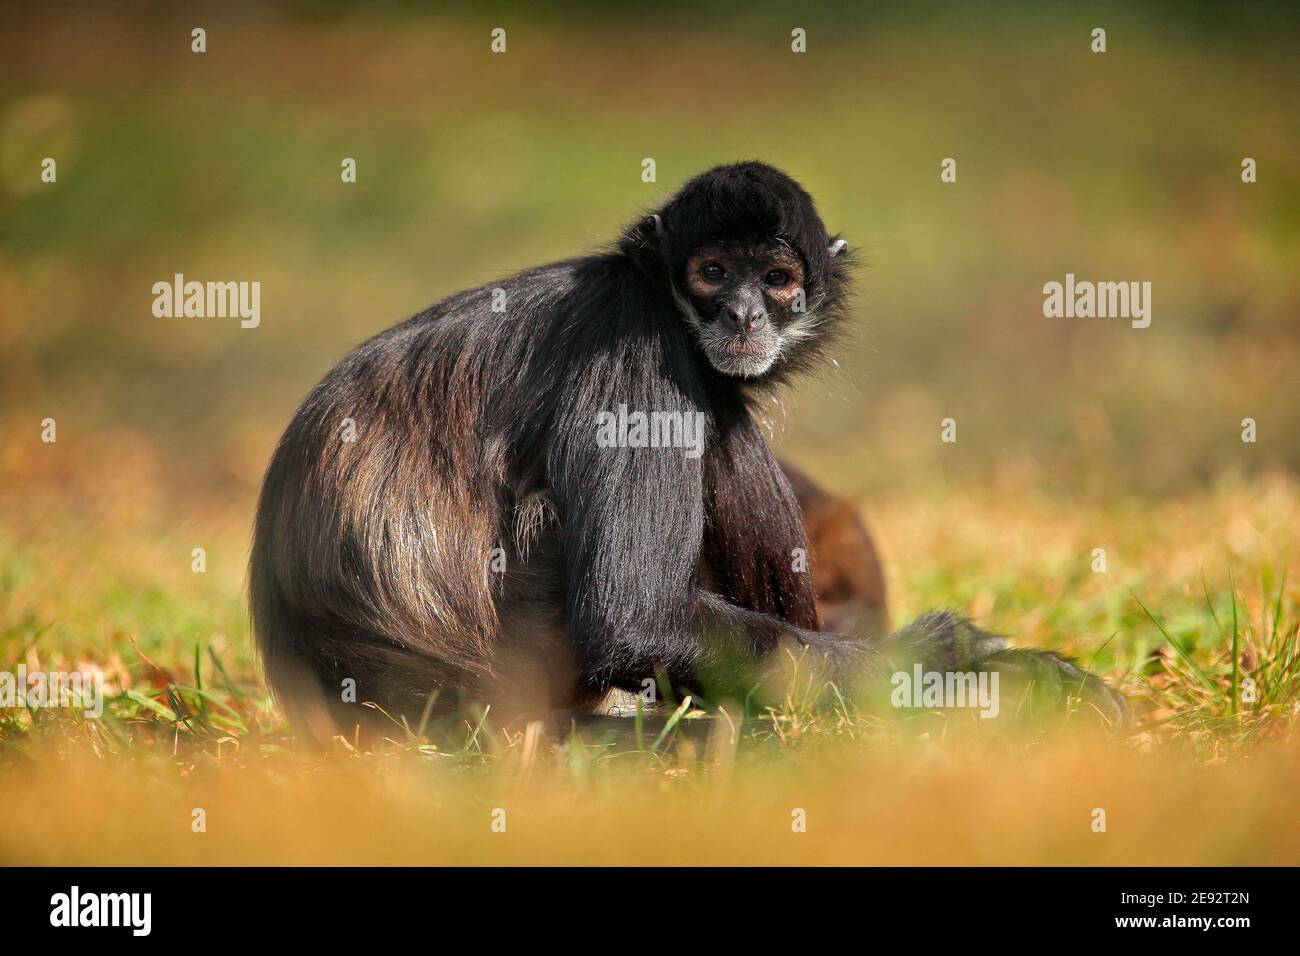 Fauna selvatica verde della Costa Rica. Scimmia di Spider con la mano nera che siede sul prato nella foresta tropicale scura. Animale nell'habitat naturale, in erba Foto Stock